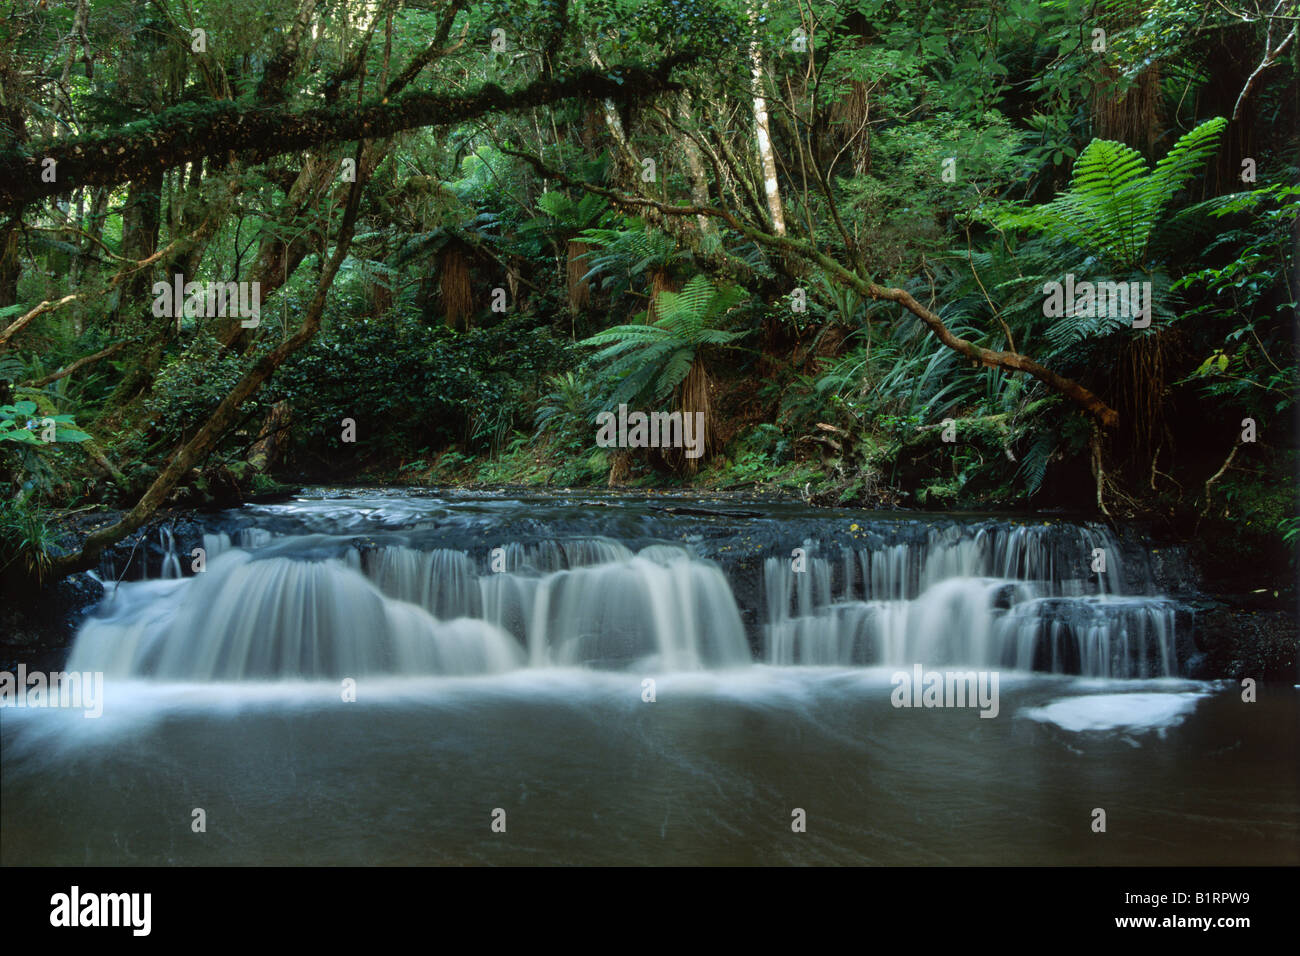 Petite cascade dans la forêt tropicale, Catlins, île du Sud, Nouvelle-Zélande Banque D'Images